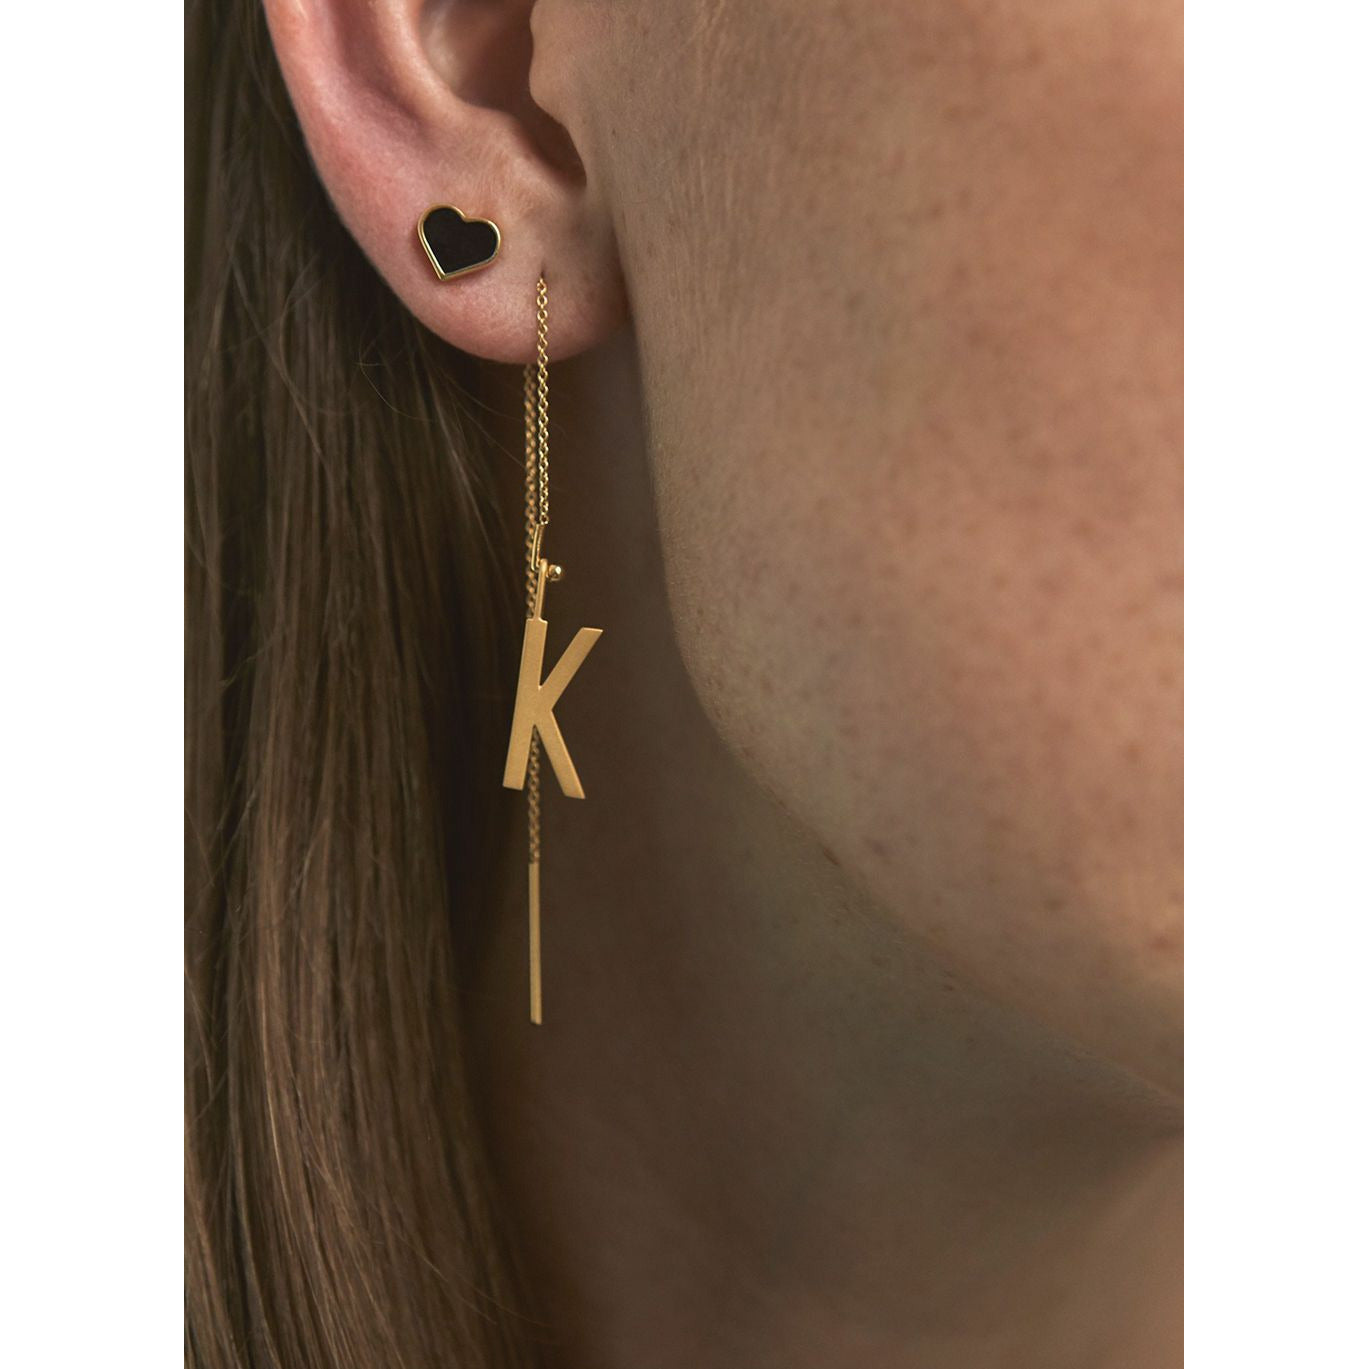 Letras de diseño Estrella de esmalte de Earring, negro/dorado